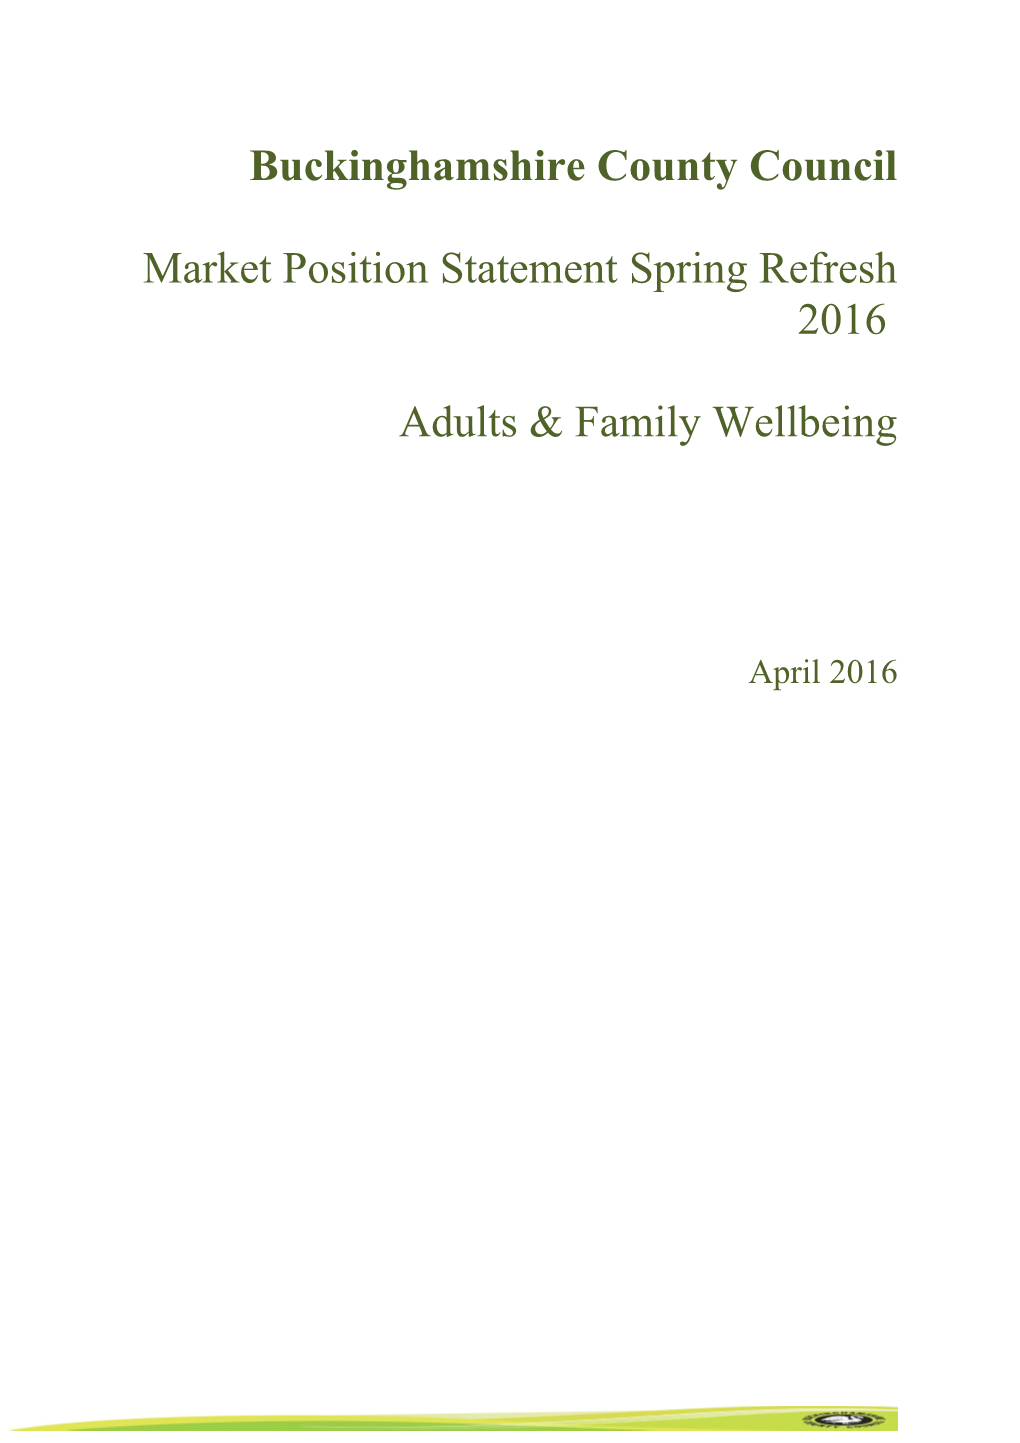 Market Position Statement